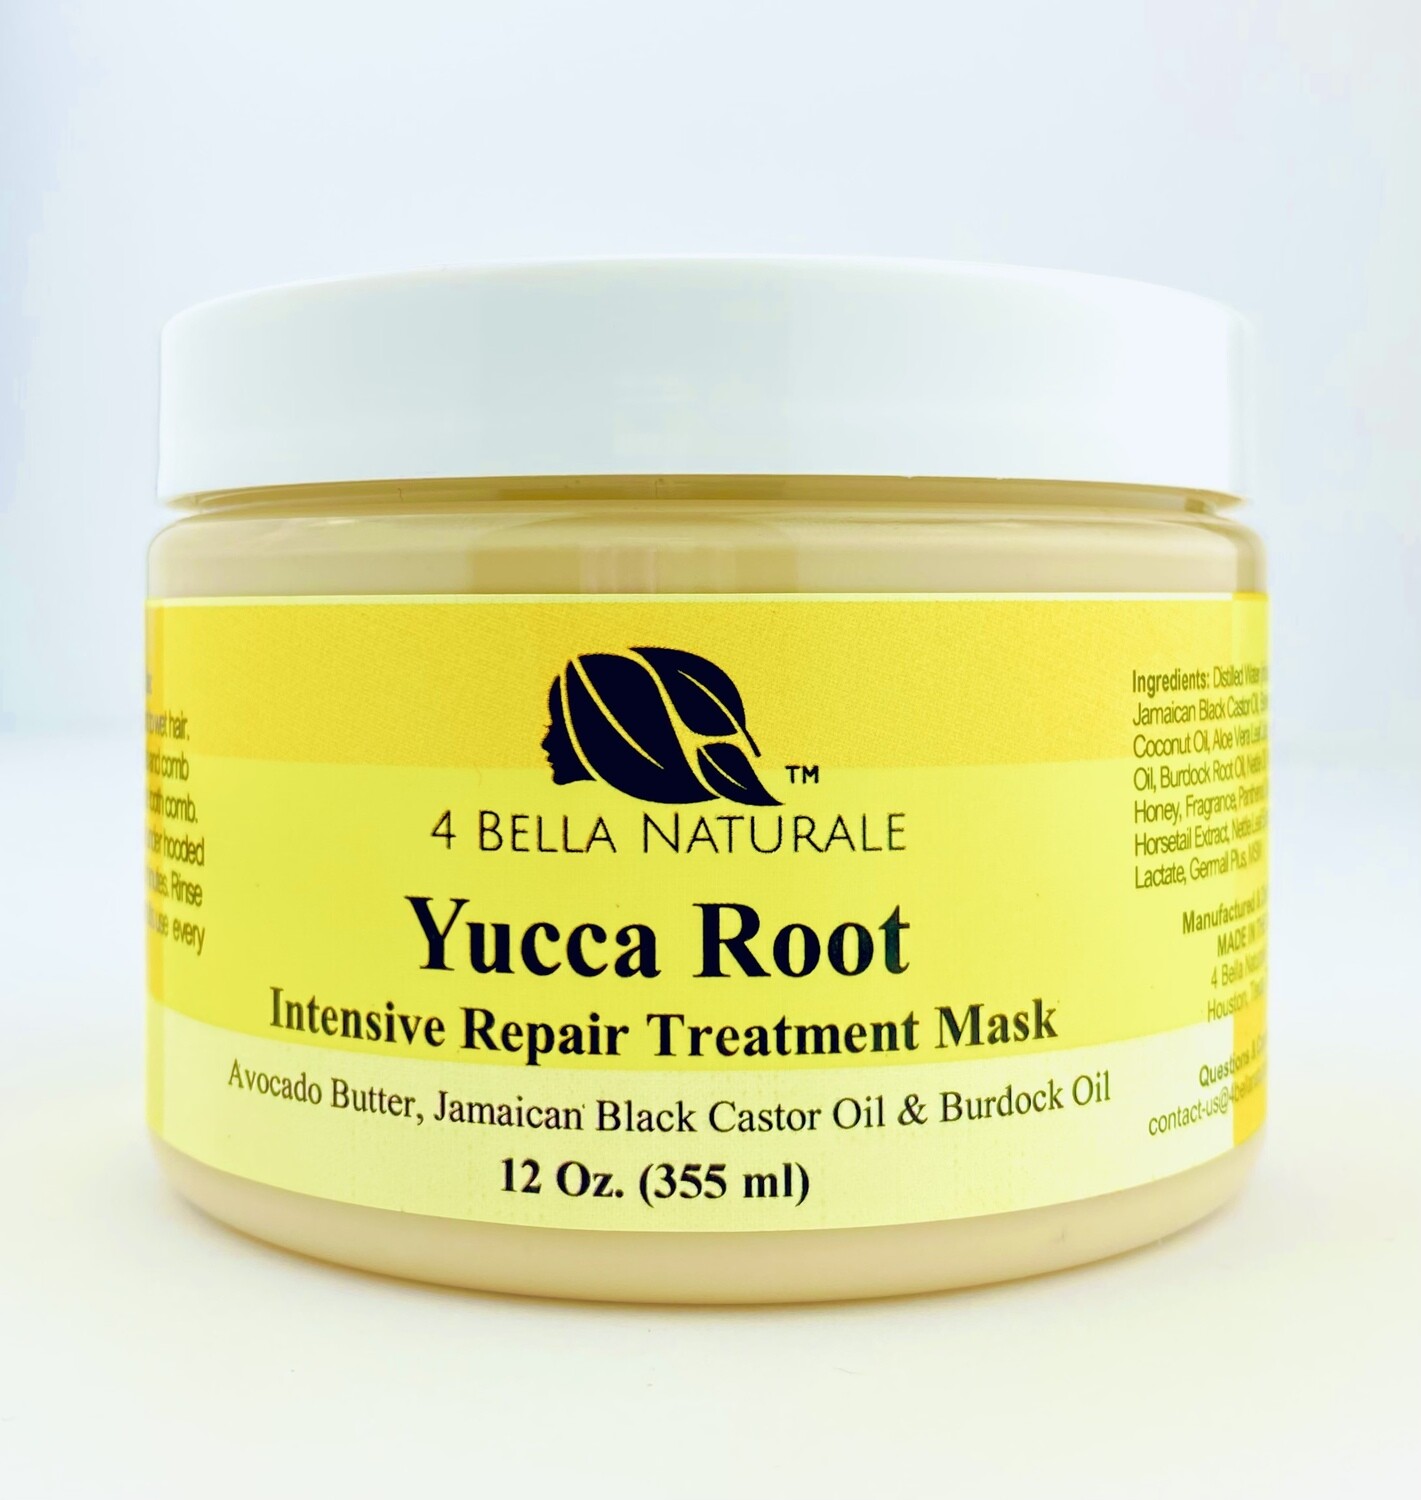 Yucca Root Intensive Repair Treatment Mask